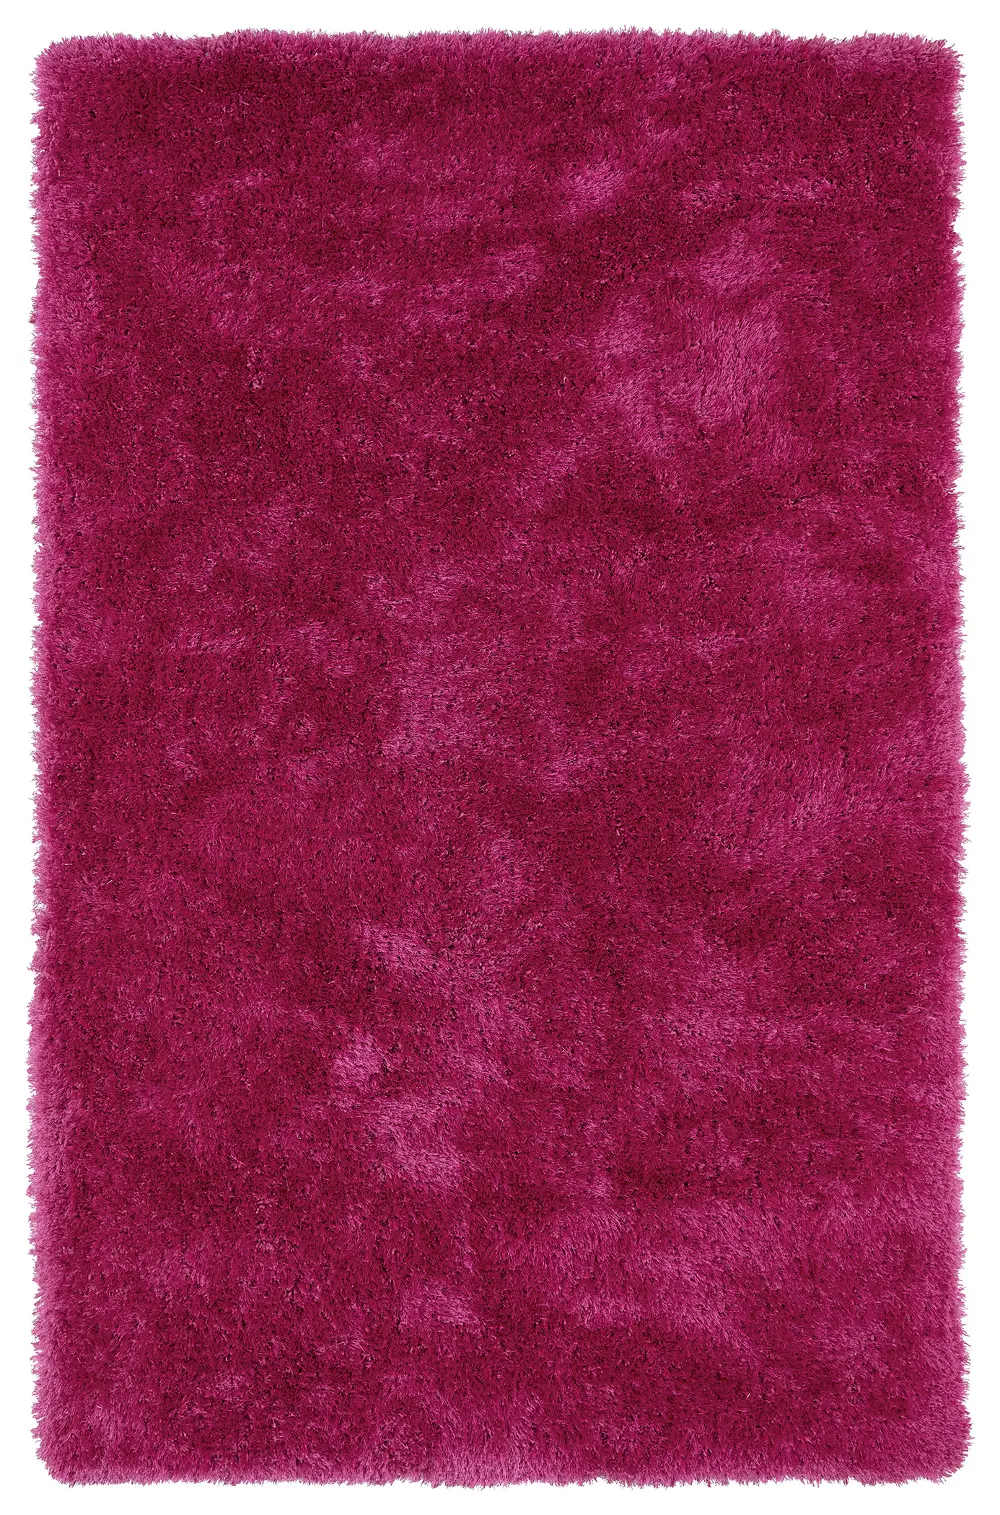 5 x 7 Medium Pink Shag Rug - Posh -1